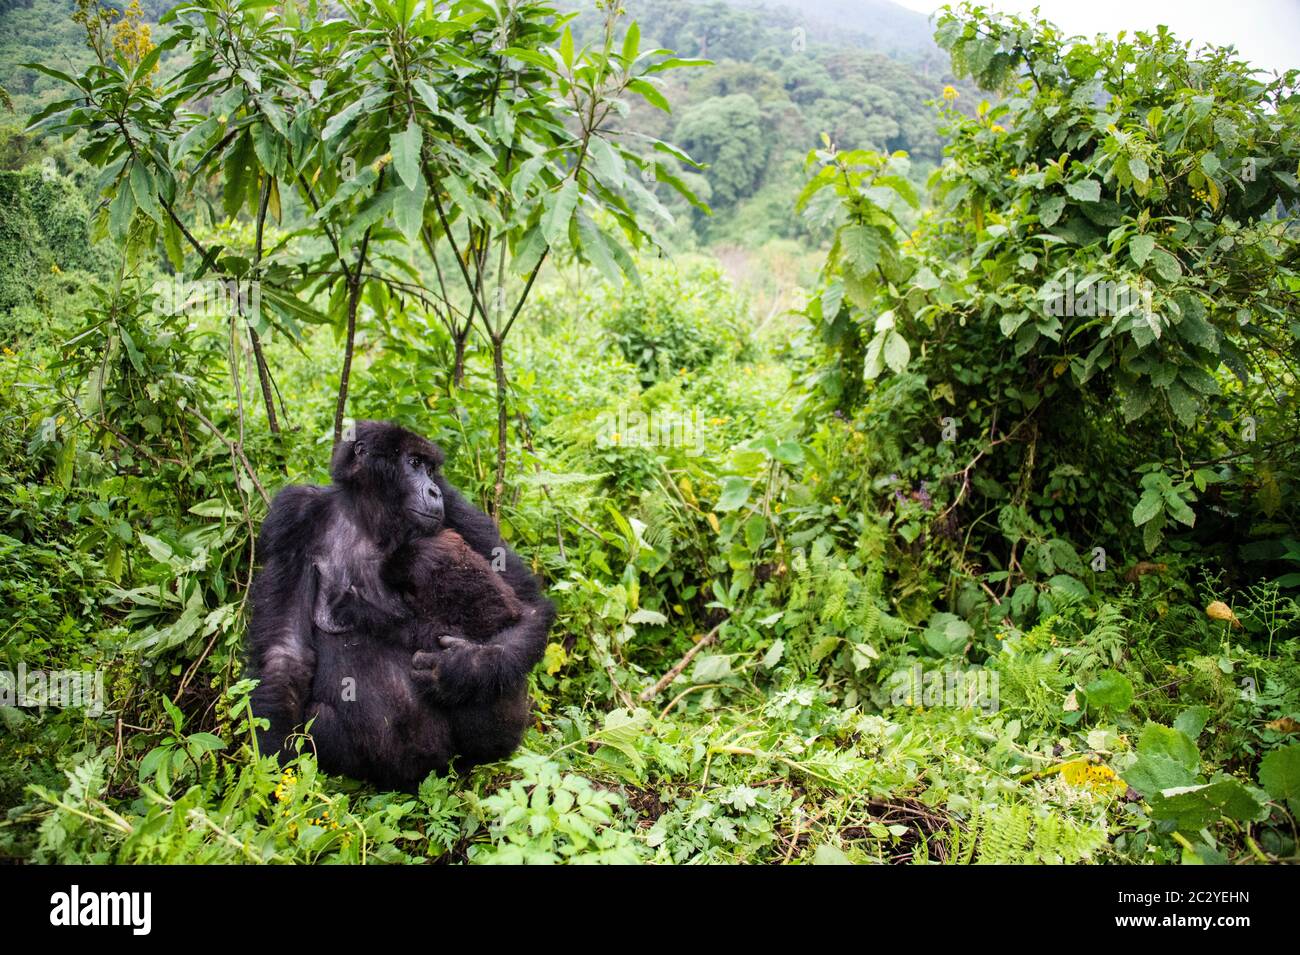 Mountain gorilla (Gorilla beringei beringei) against greenery, Rwanda, Africa Stock Photo